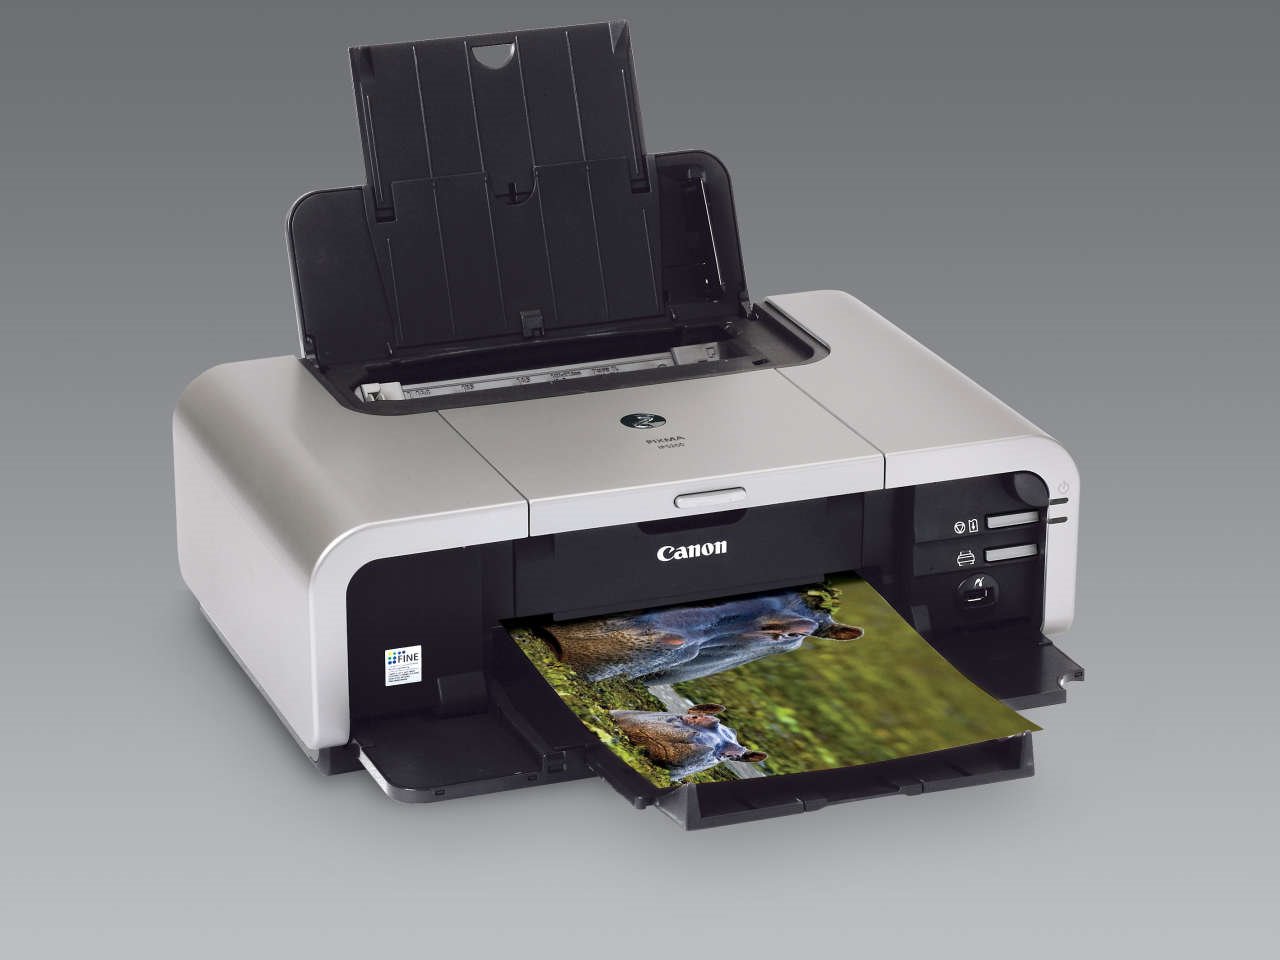 canon mp490 printer software